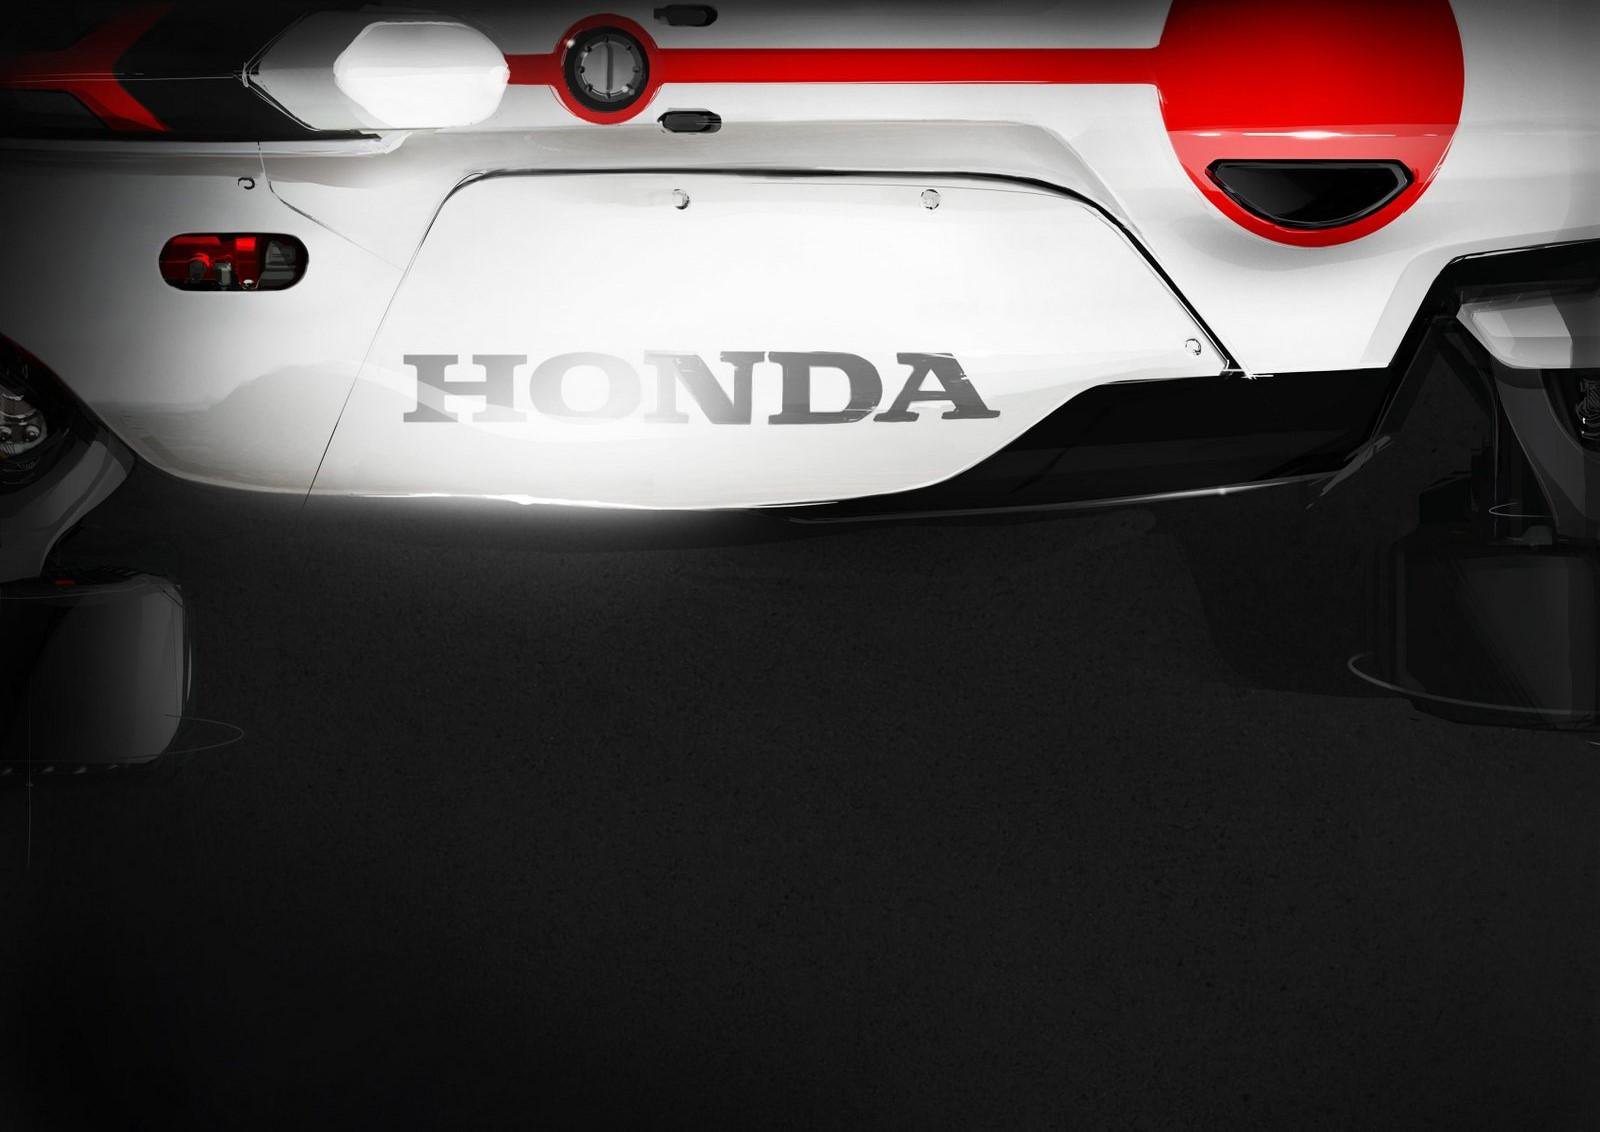 Honda chystá nový koncept okruhového vozu